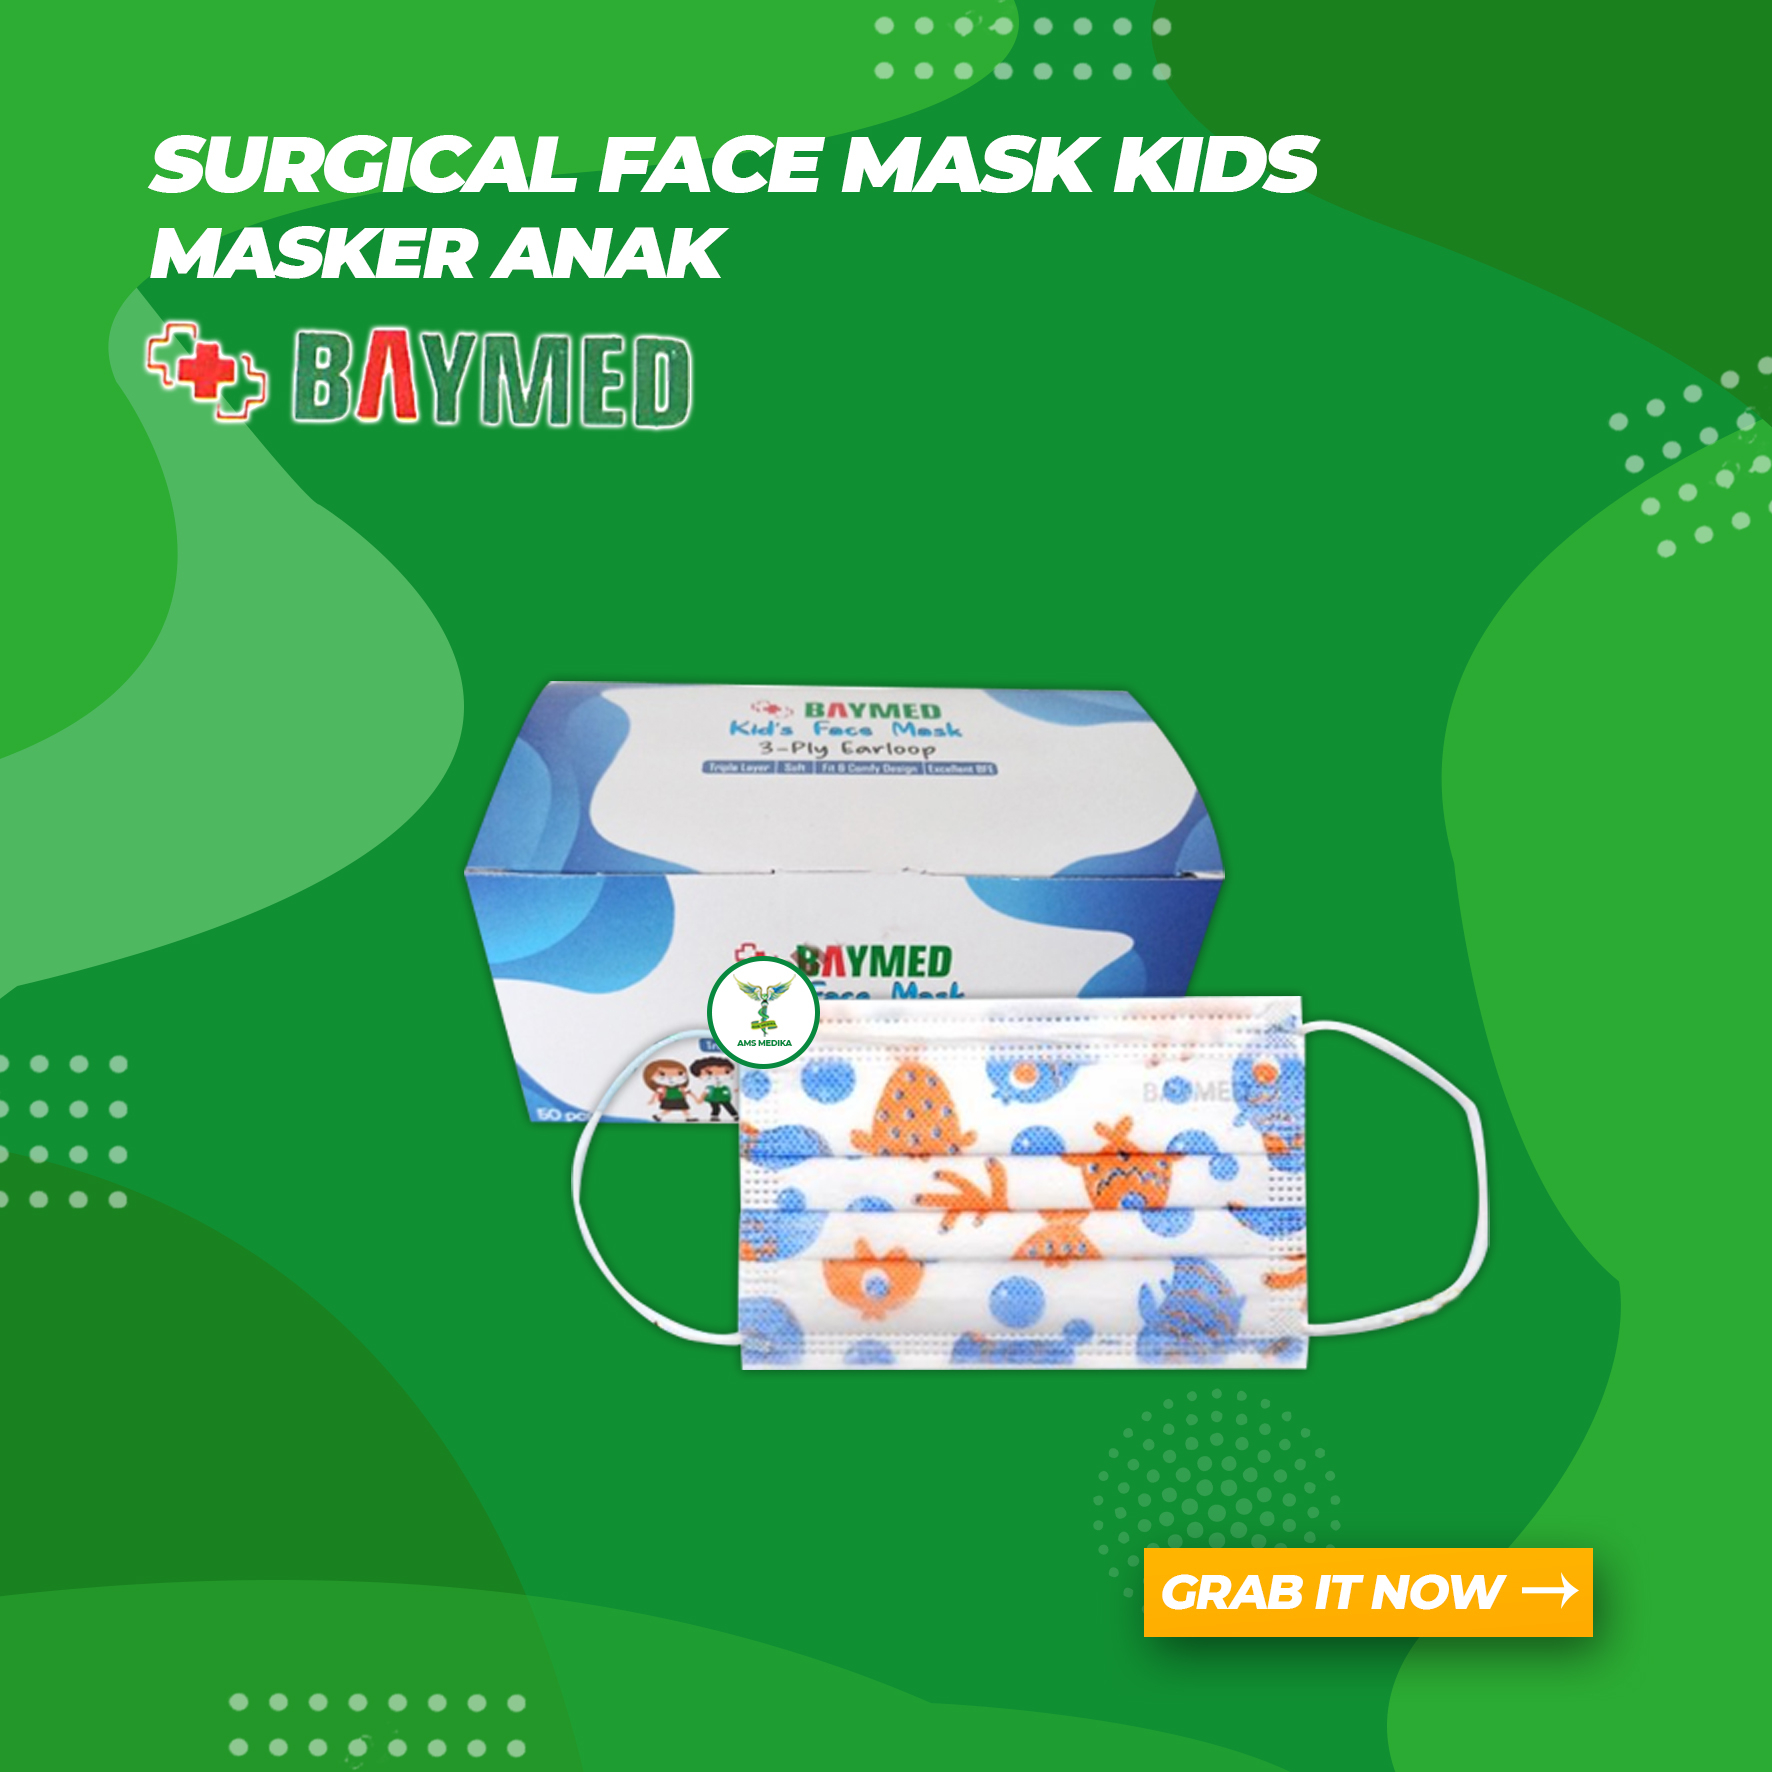 Masker Anak / Surgical Face Mask Kids Baymed